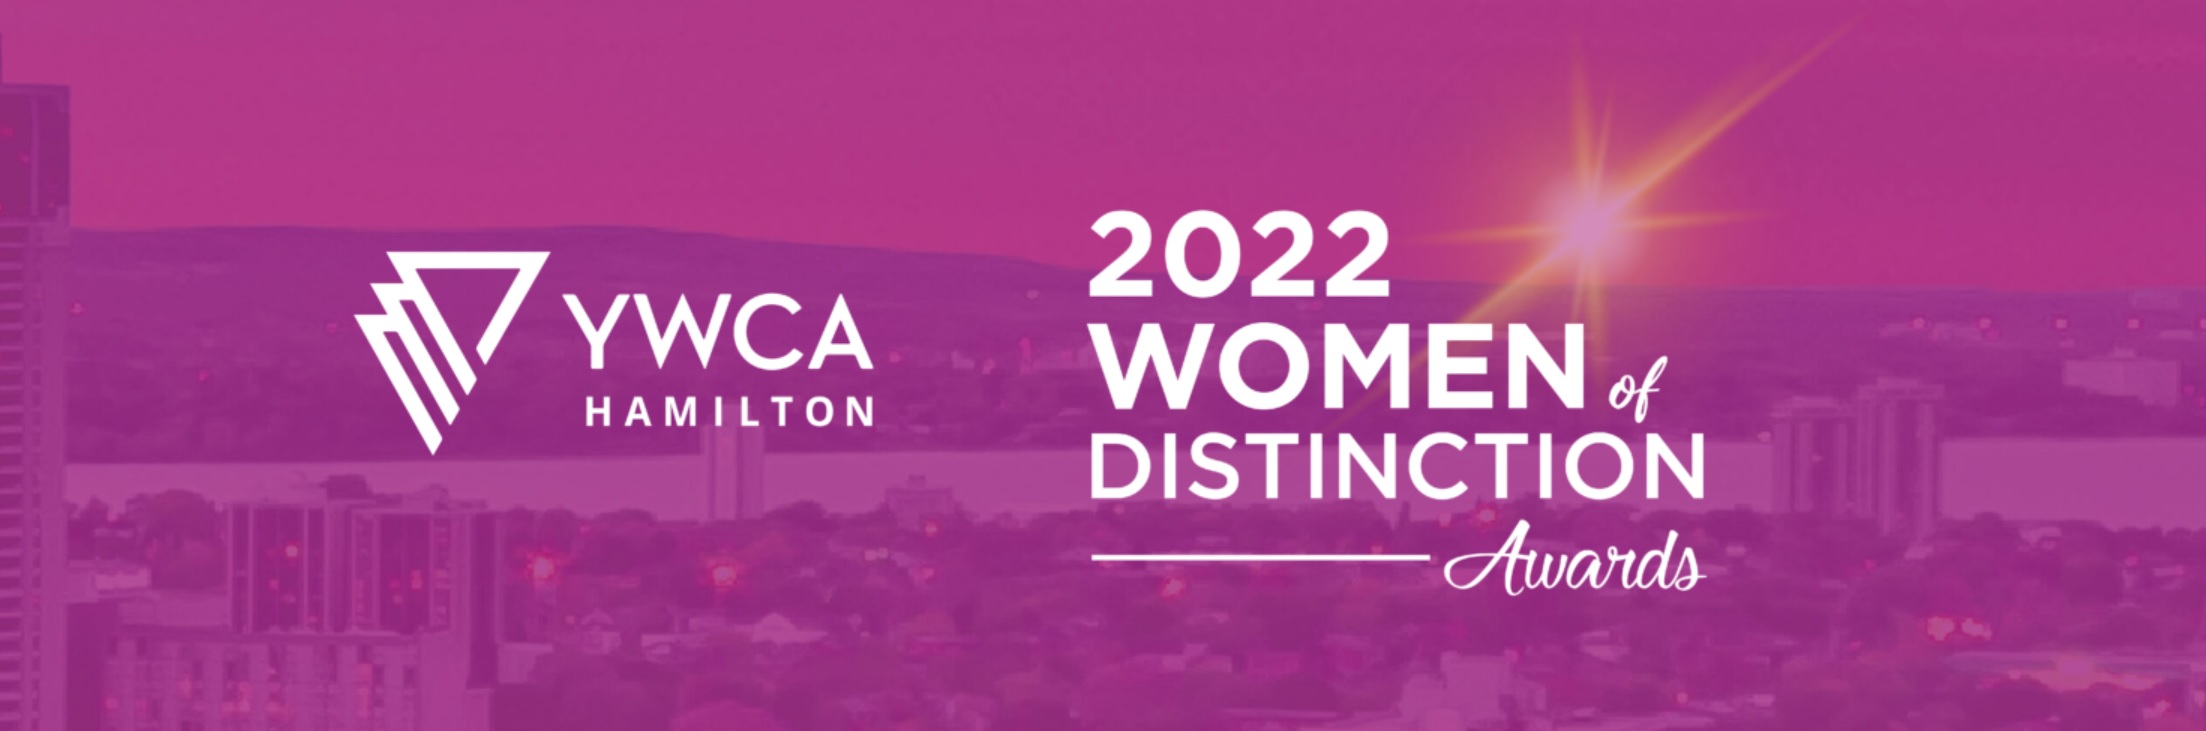 YWCA-Hamilton-Women-Of-Distinction-Awards-2022